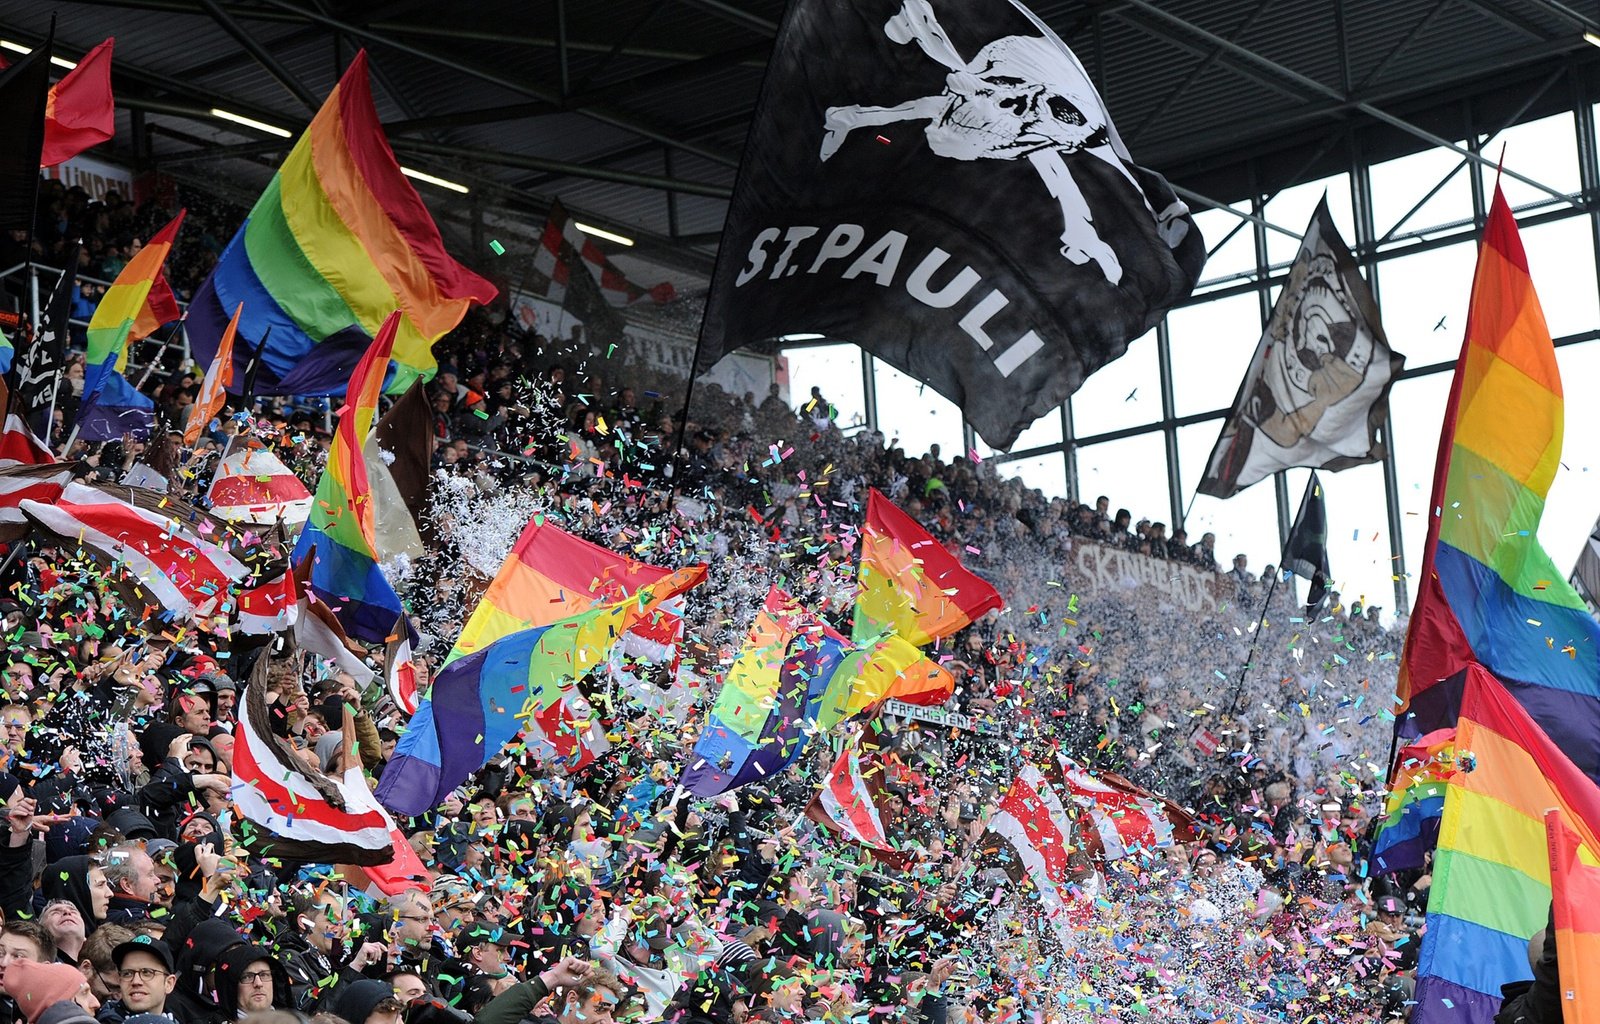  Fans at the St. Pauli stadium in Hamburg. Source: Design Museum